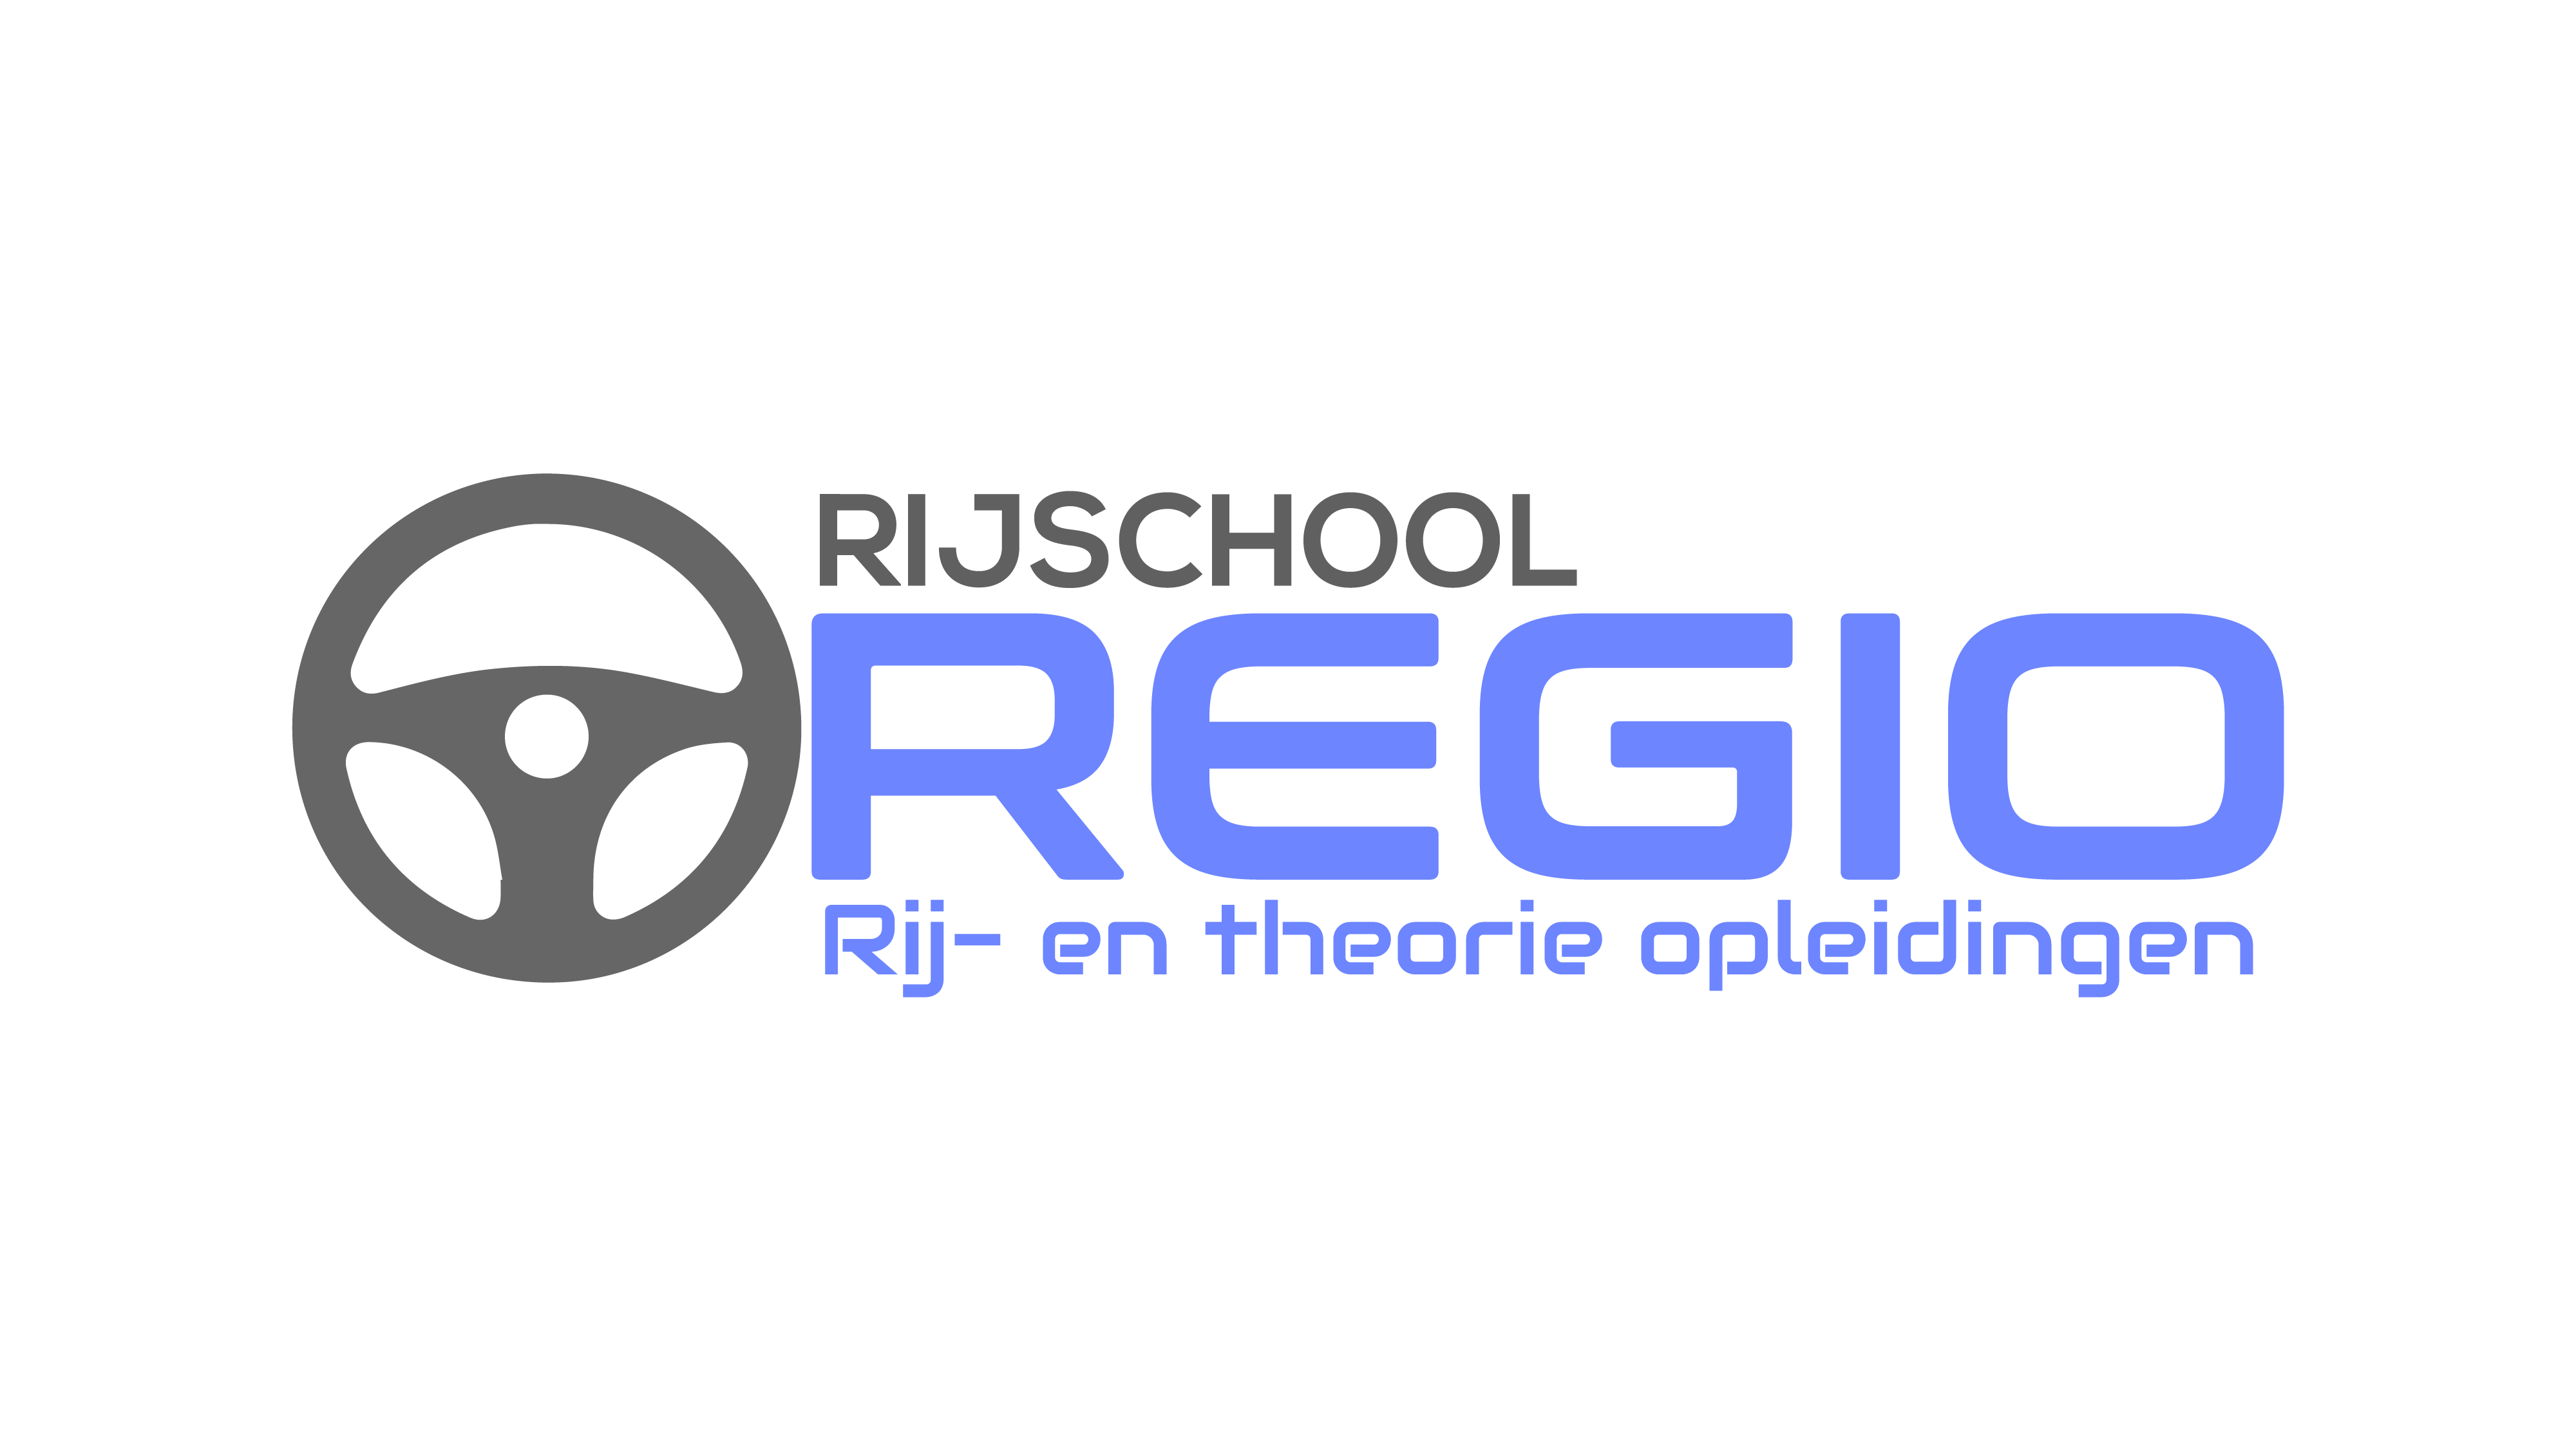 Rijschool Regio - De rijschool in de regio van Haarlem e.o.